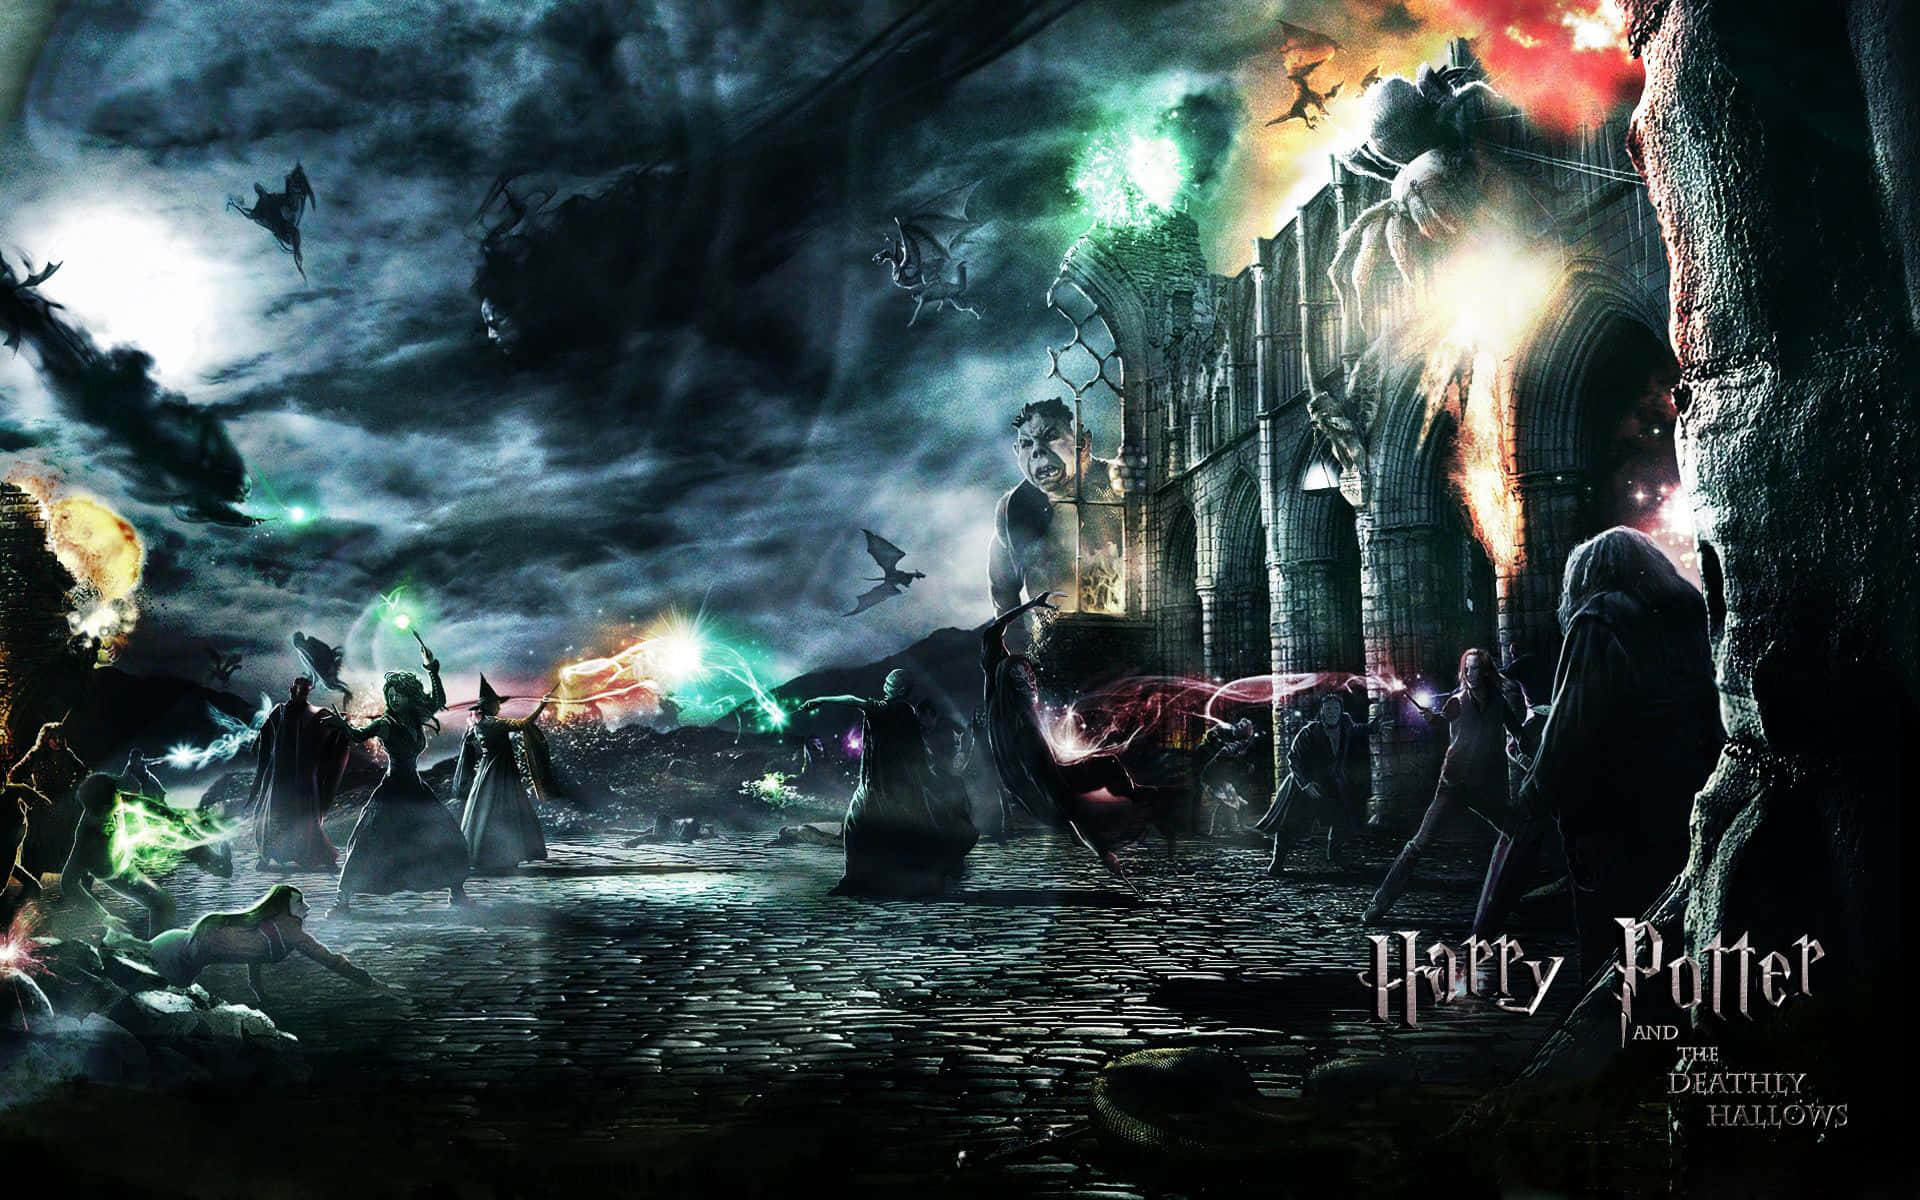 Fantastiskbaggrund Med Harry Potter Og Kampen Om Hogwarts.